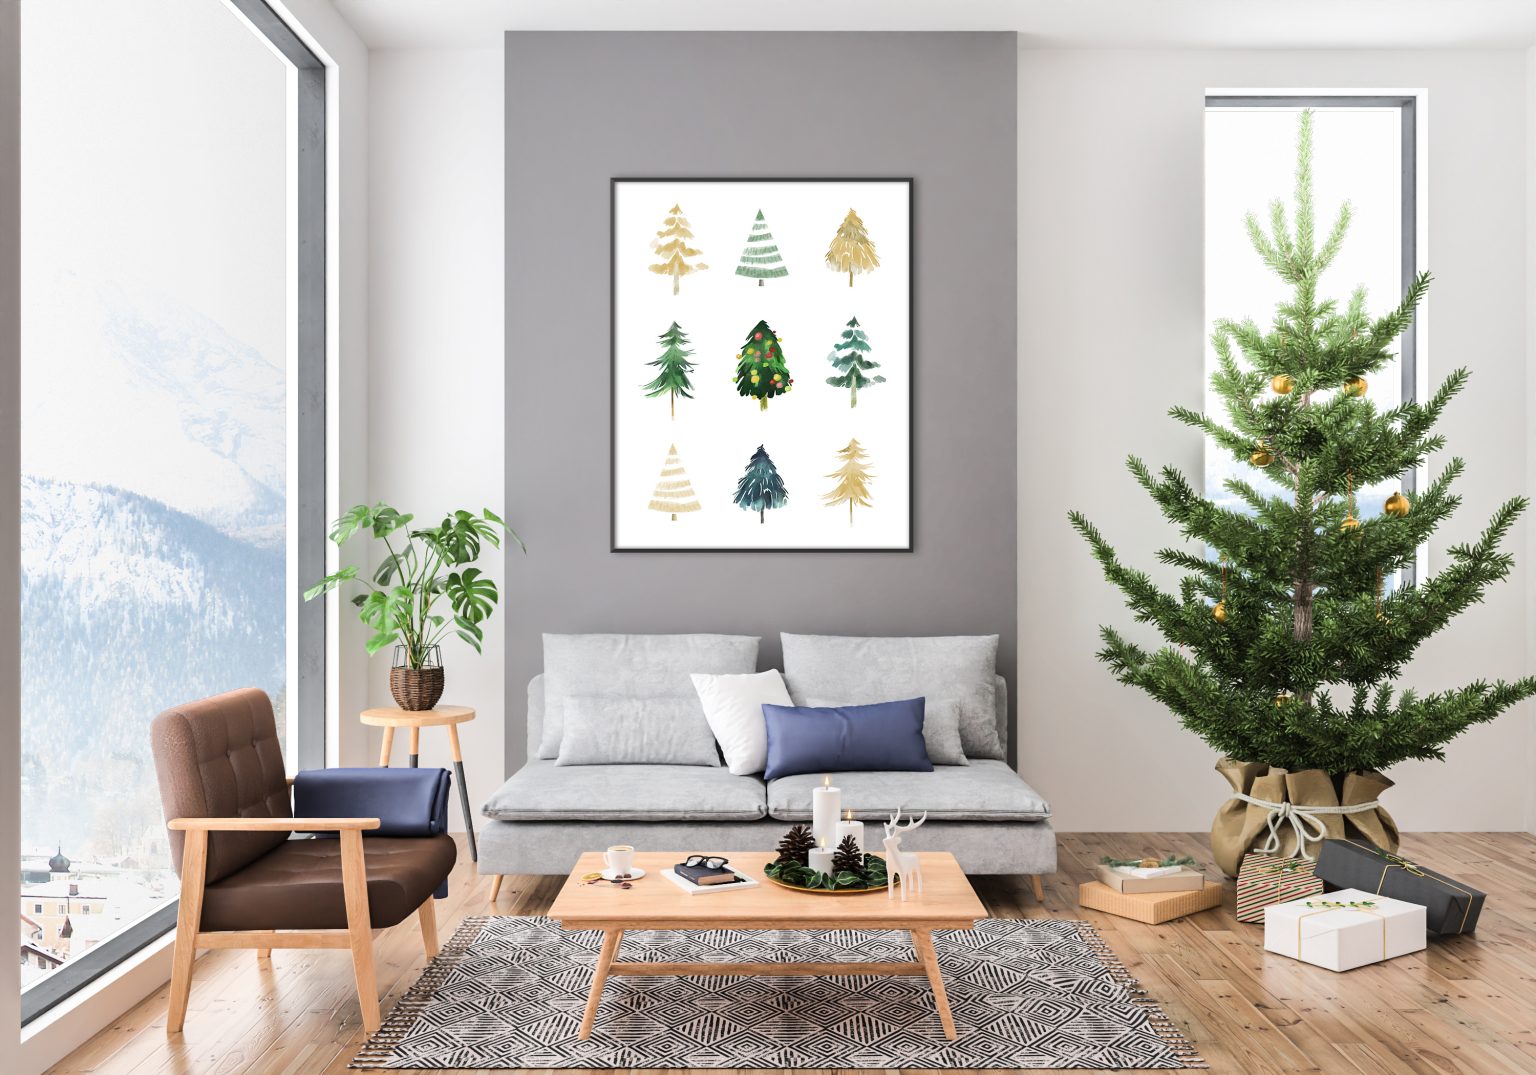 Christmas Tree PRINTABLE Wall Art, Abstract Christmas Trees Print in ...